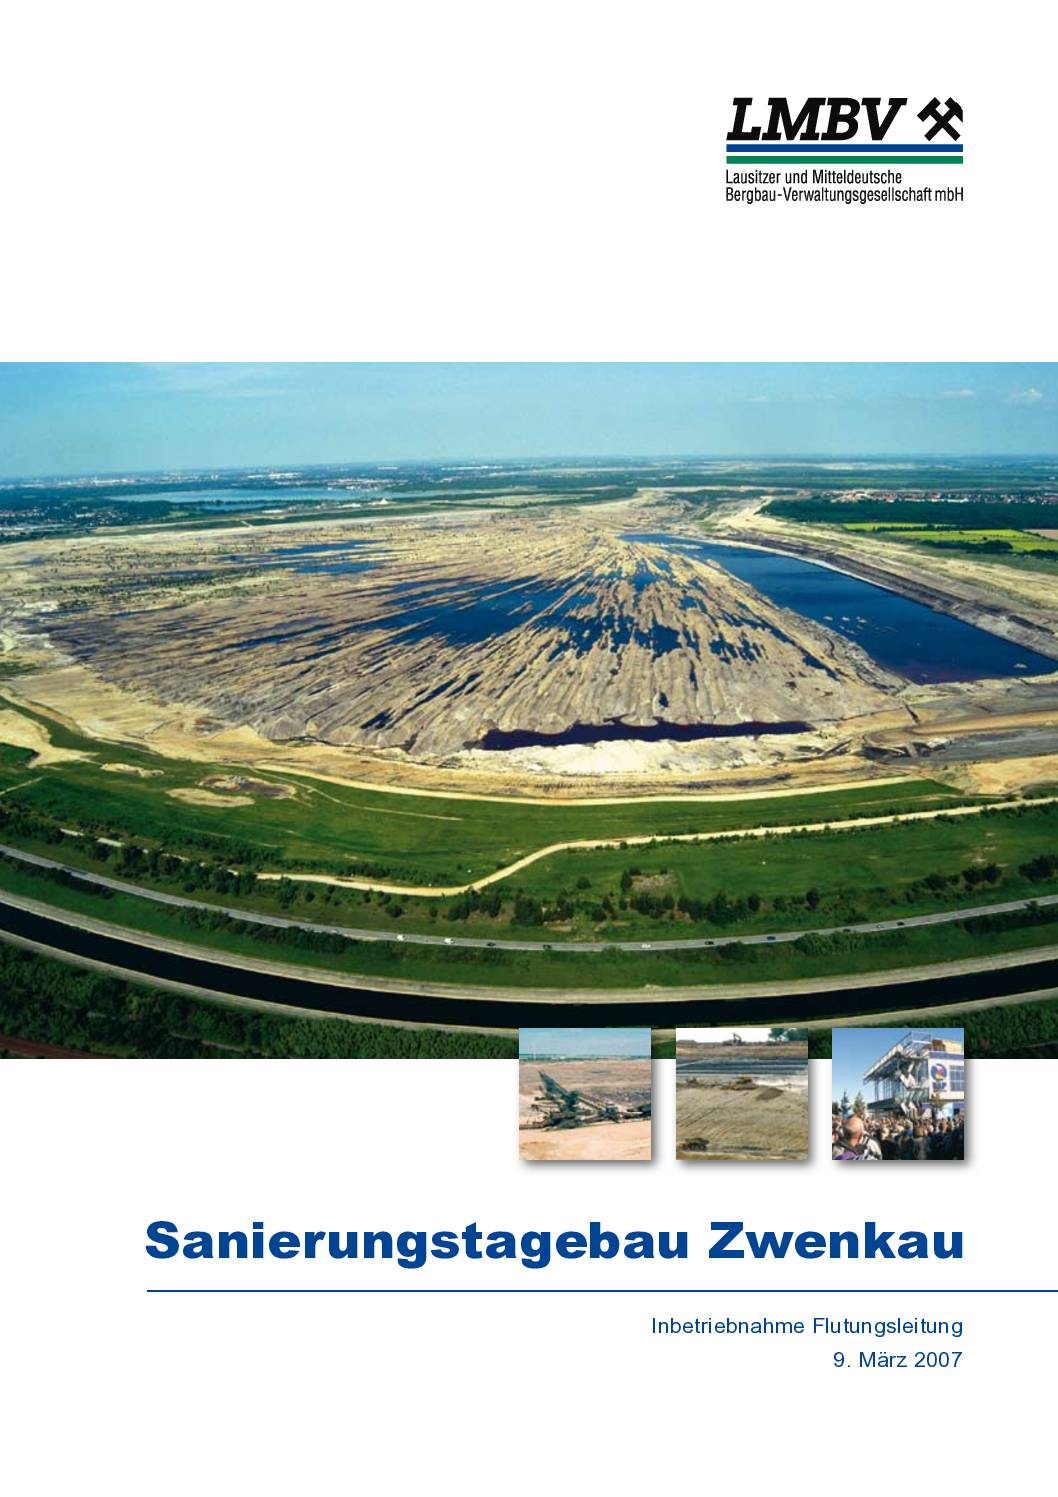 Sanierungstagebau Zwenkau 2007 pdf